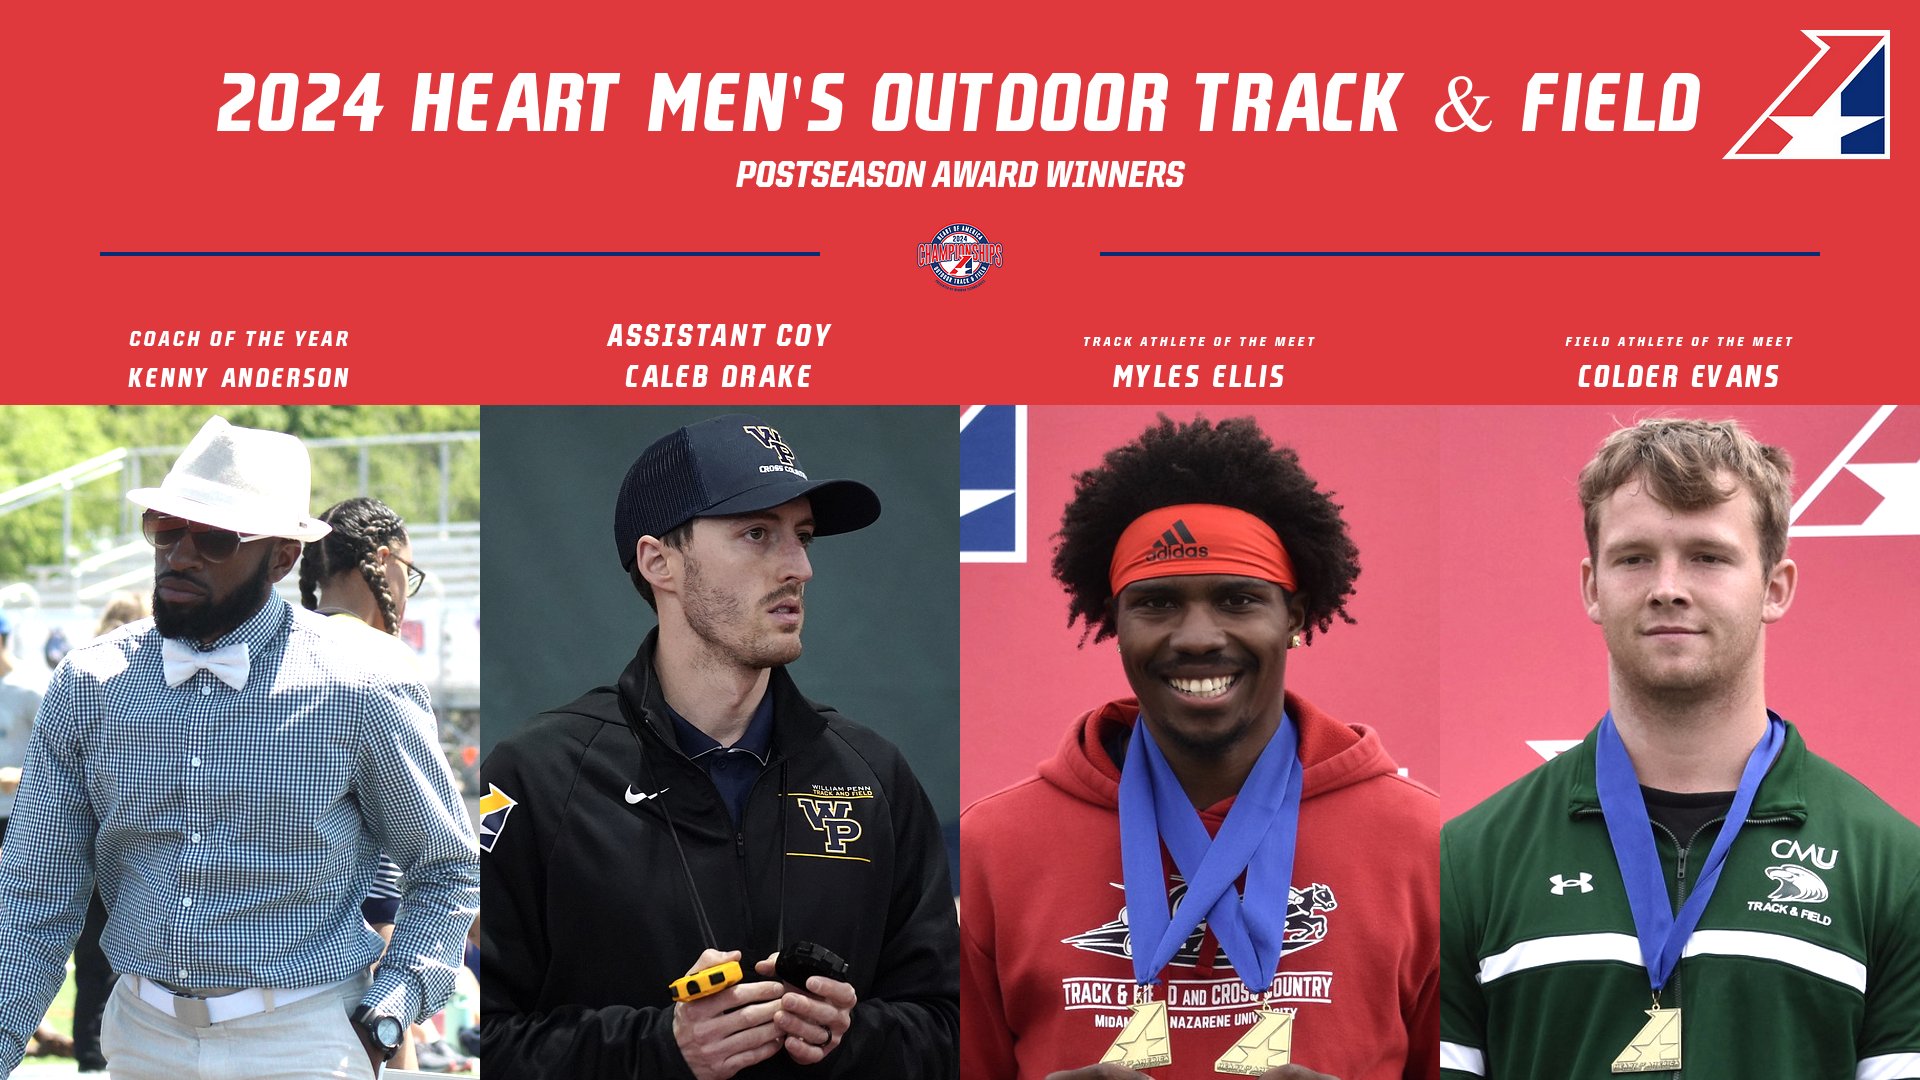 2024 Heart Men’s Outdoor Track & Field Postseason Award Winners Announced